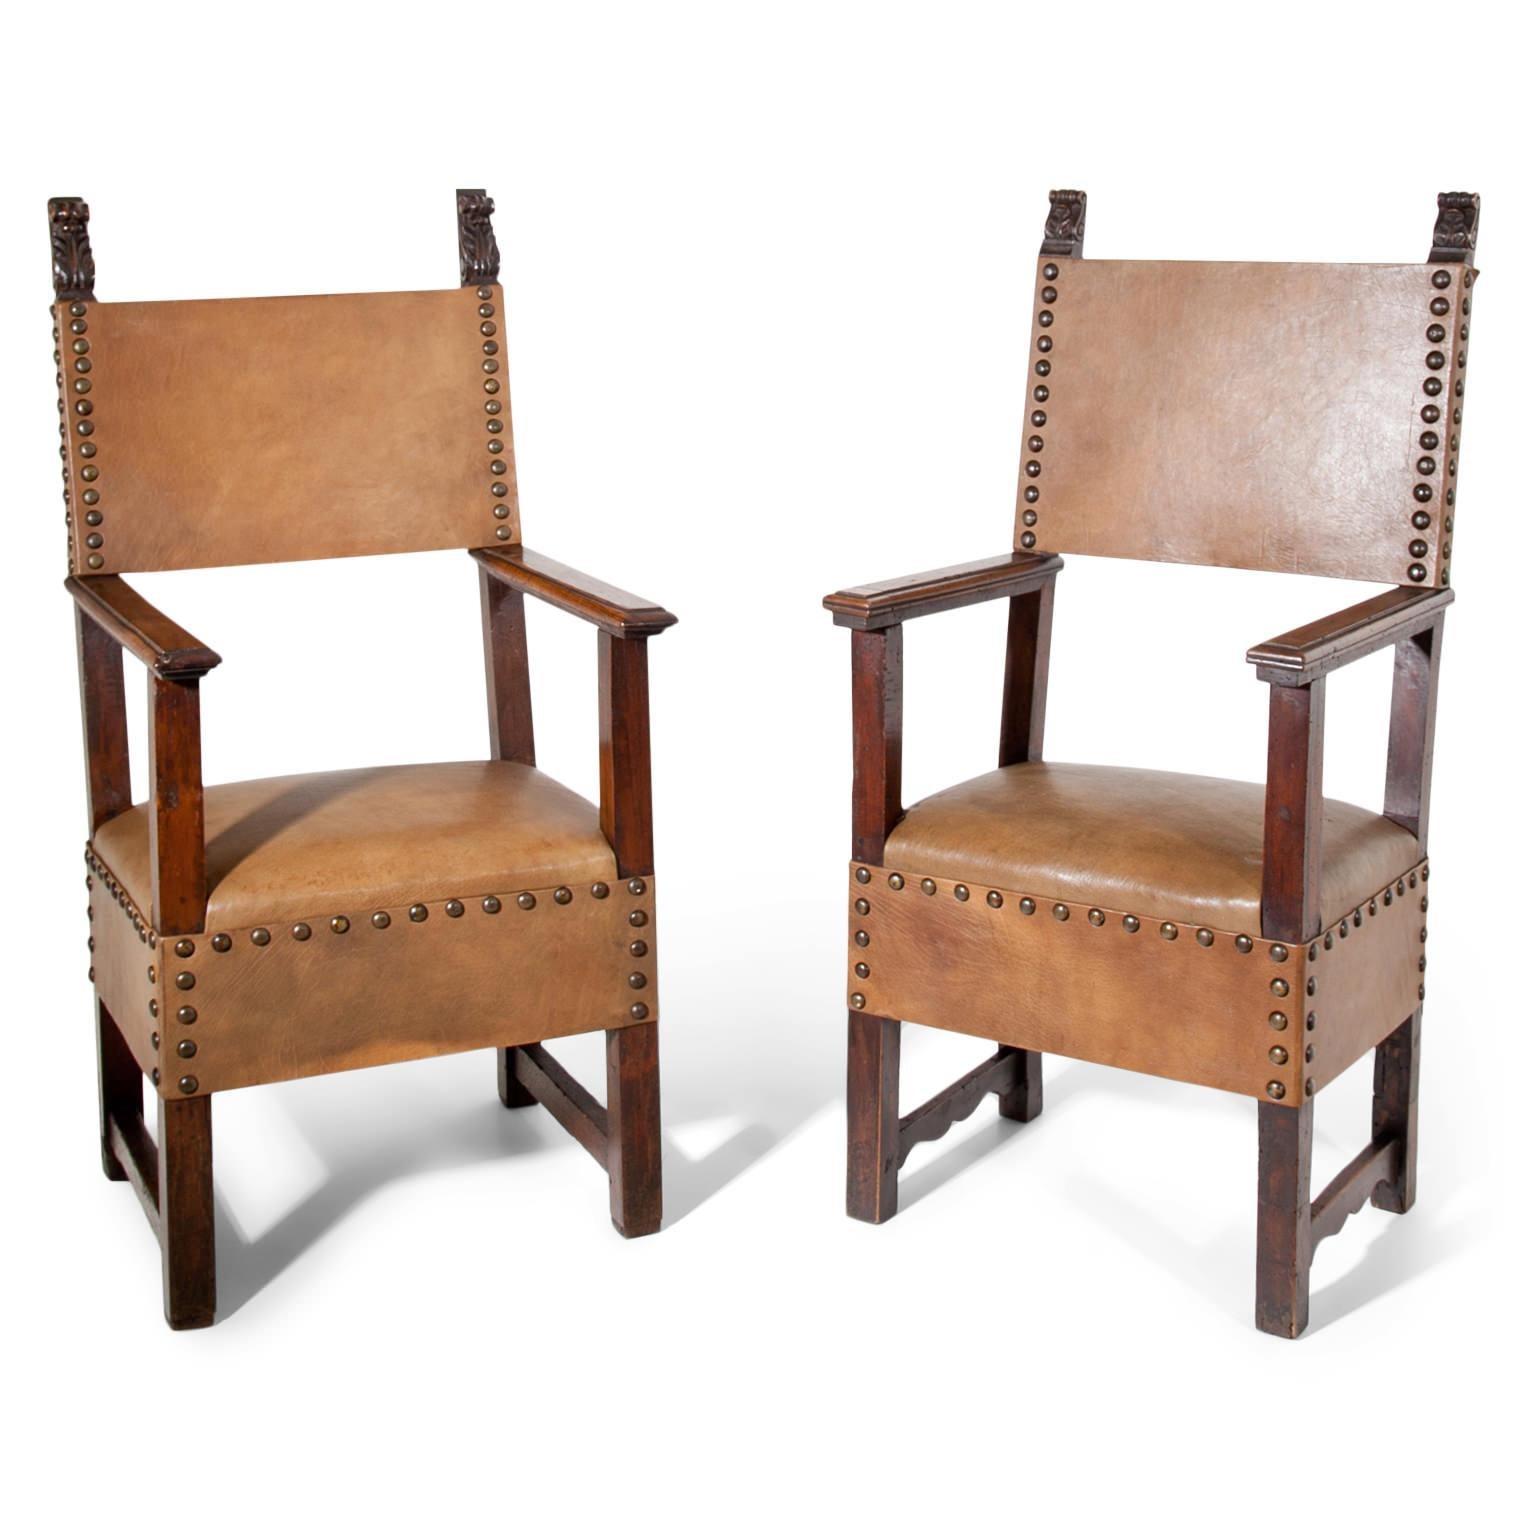 Renaissance-Sessel aus Nussbaum, Sitz und Rückenlehne sind mit braunem Leder bezogen und vernietet. Der Stuhl steht auf geraden, quadratischen Beinen, die auf beiden Seiten miteinander verbunden sind. Die geraden Armlehnen ragen leicht über die